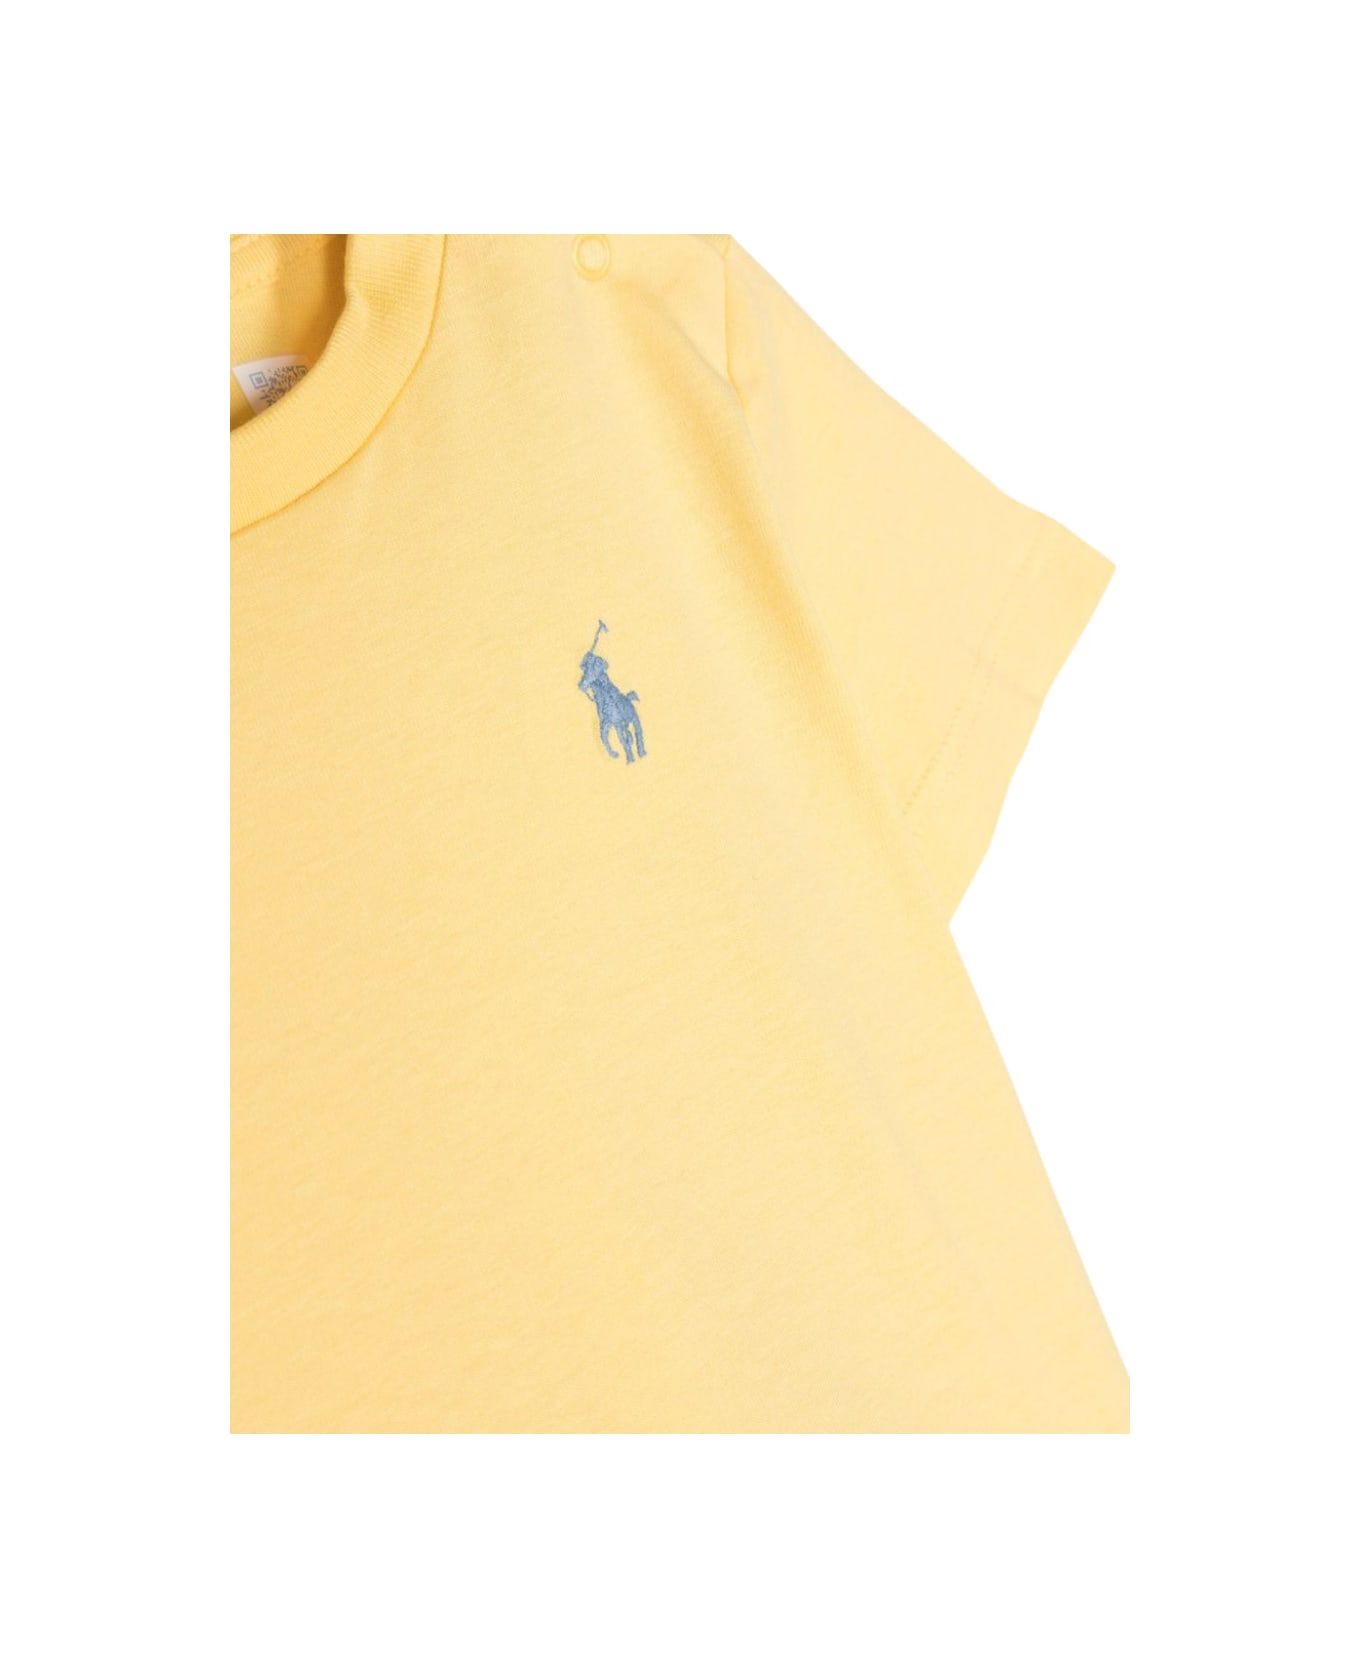 Ralph Lauren Ss Cn-tops-t-shirt - YELLOW